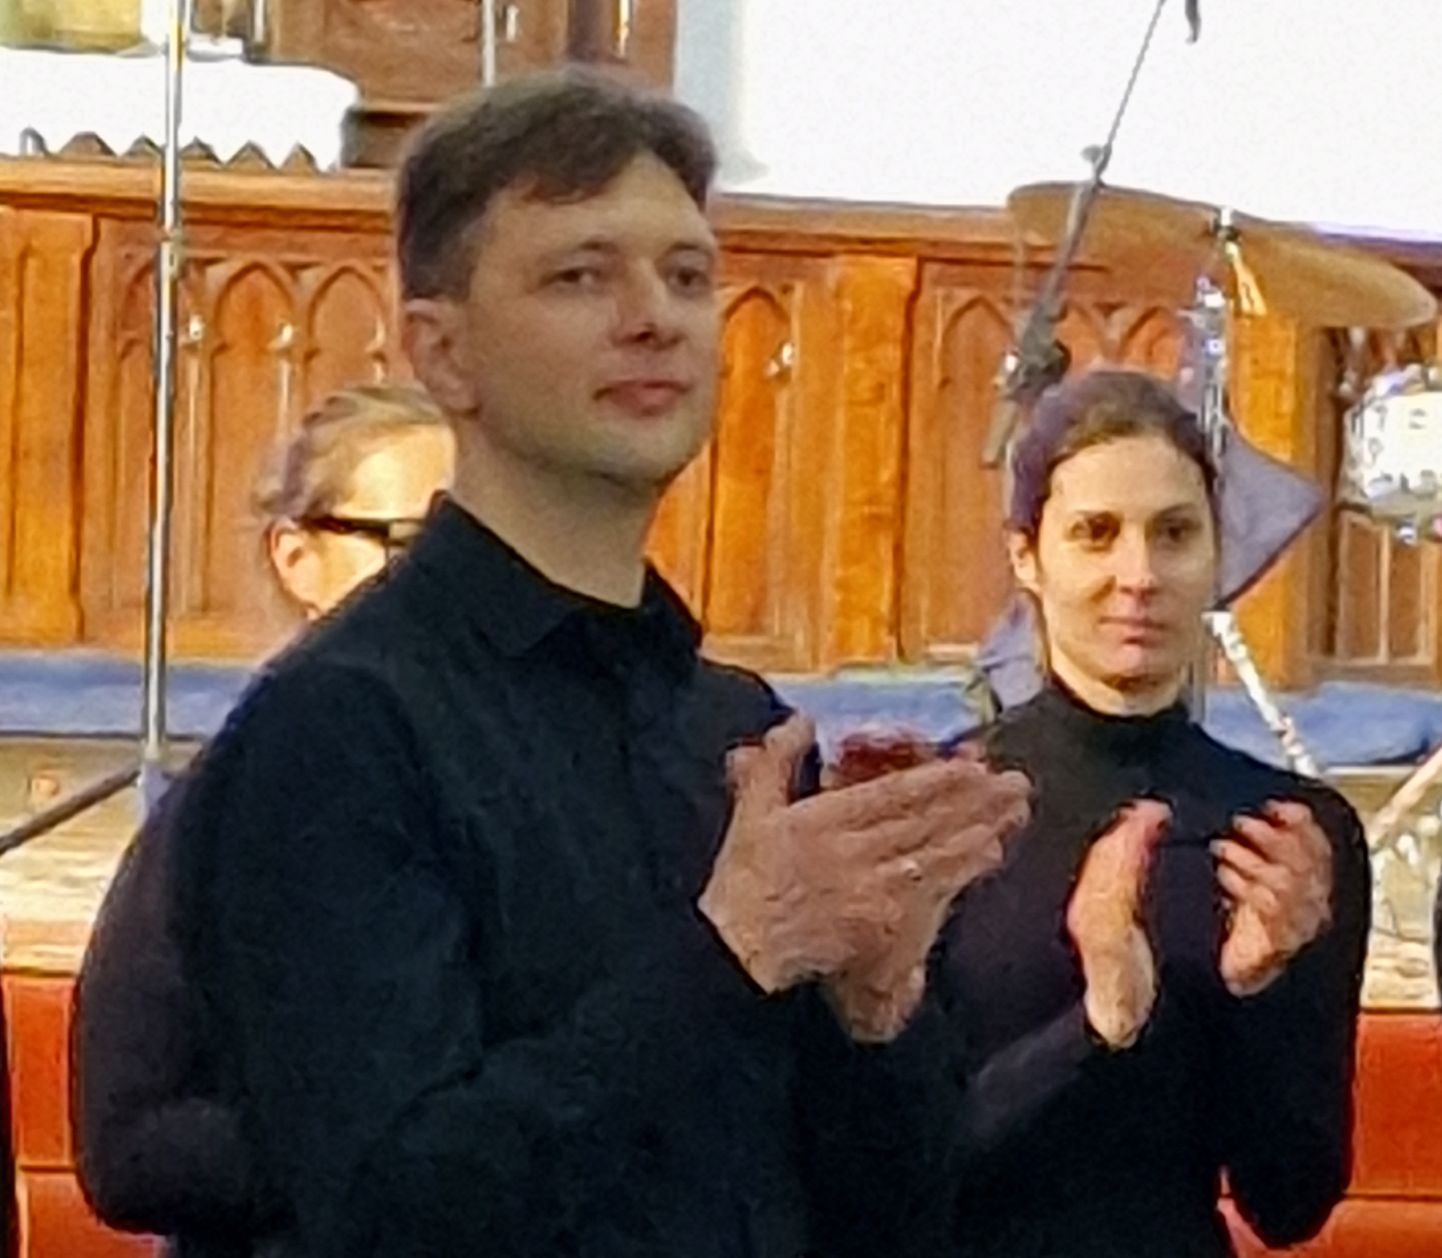 Sergei Mironovi ja vokaalansambli Rejoice noorte muusikute sõnul tõi 13. sajandi kirikus esinemine värina hinge.